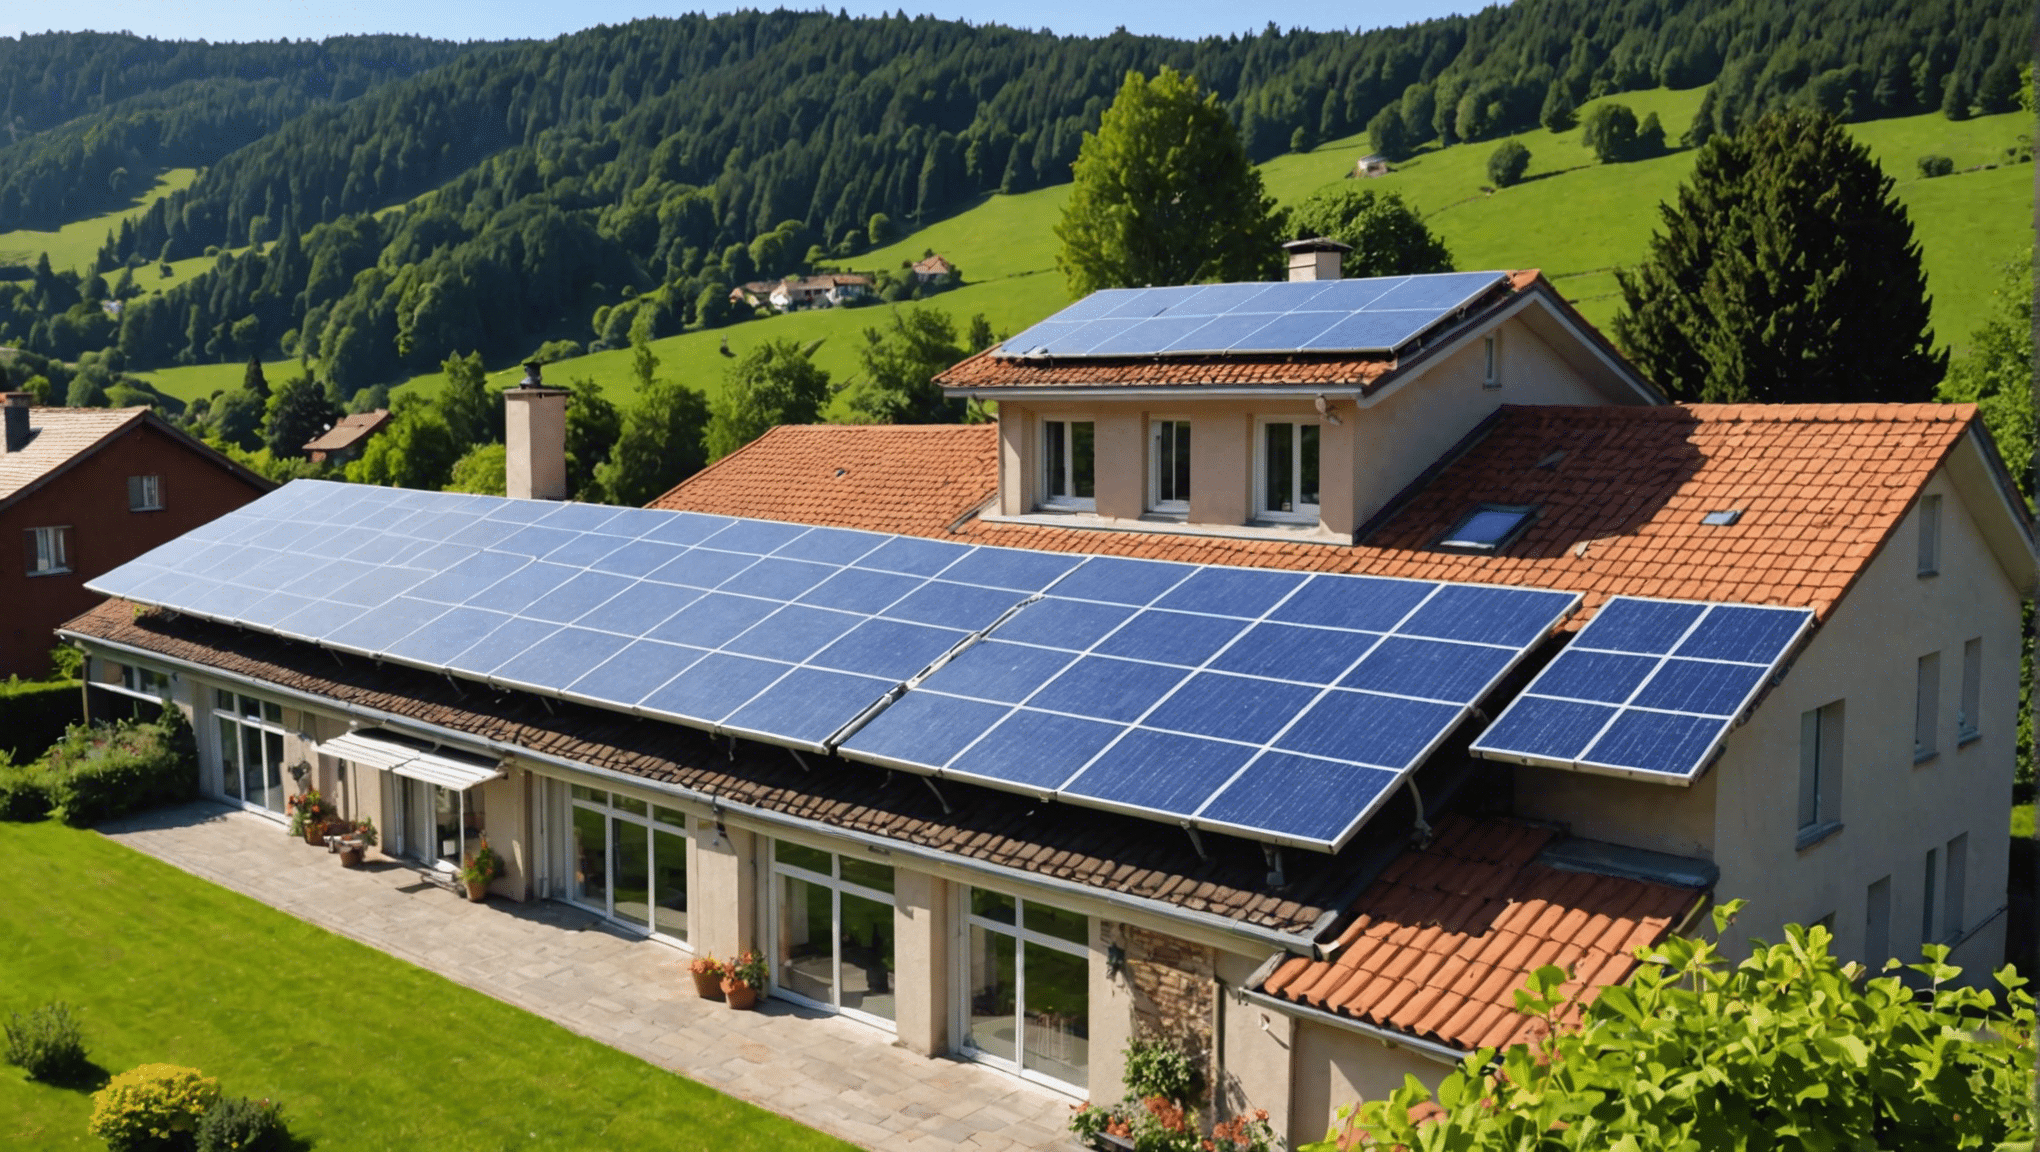 découvrez les possibilités d'accéder à l'énergie solaire gratuitement et sans frais initiaux pour obtenir des panneaux solaires.